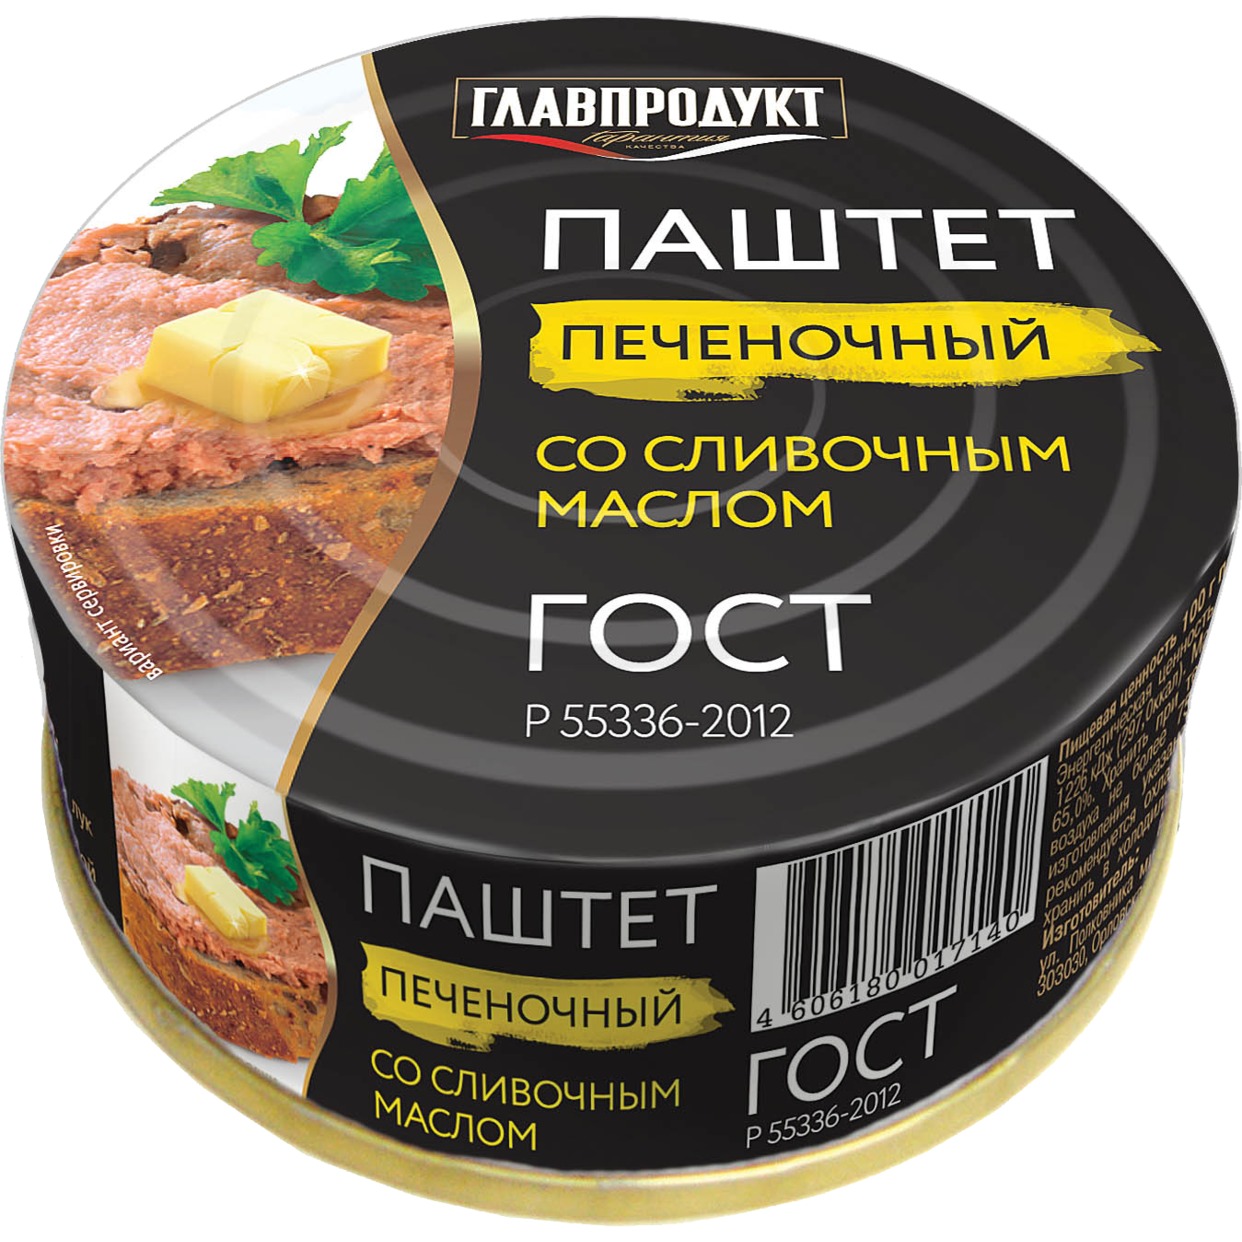 Паштет печеночный, со сливочным маслом, Главпродукт, 100 г